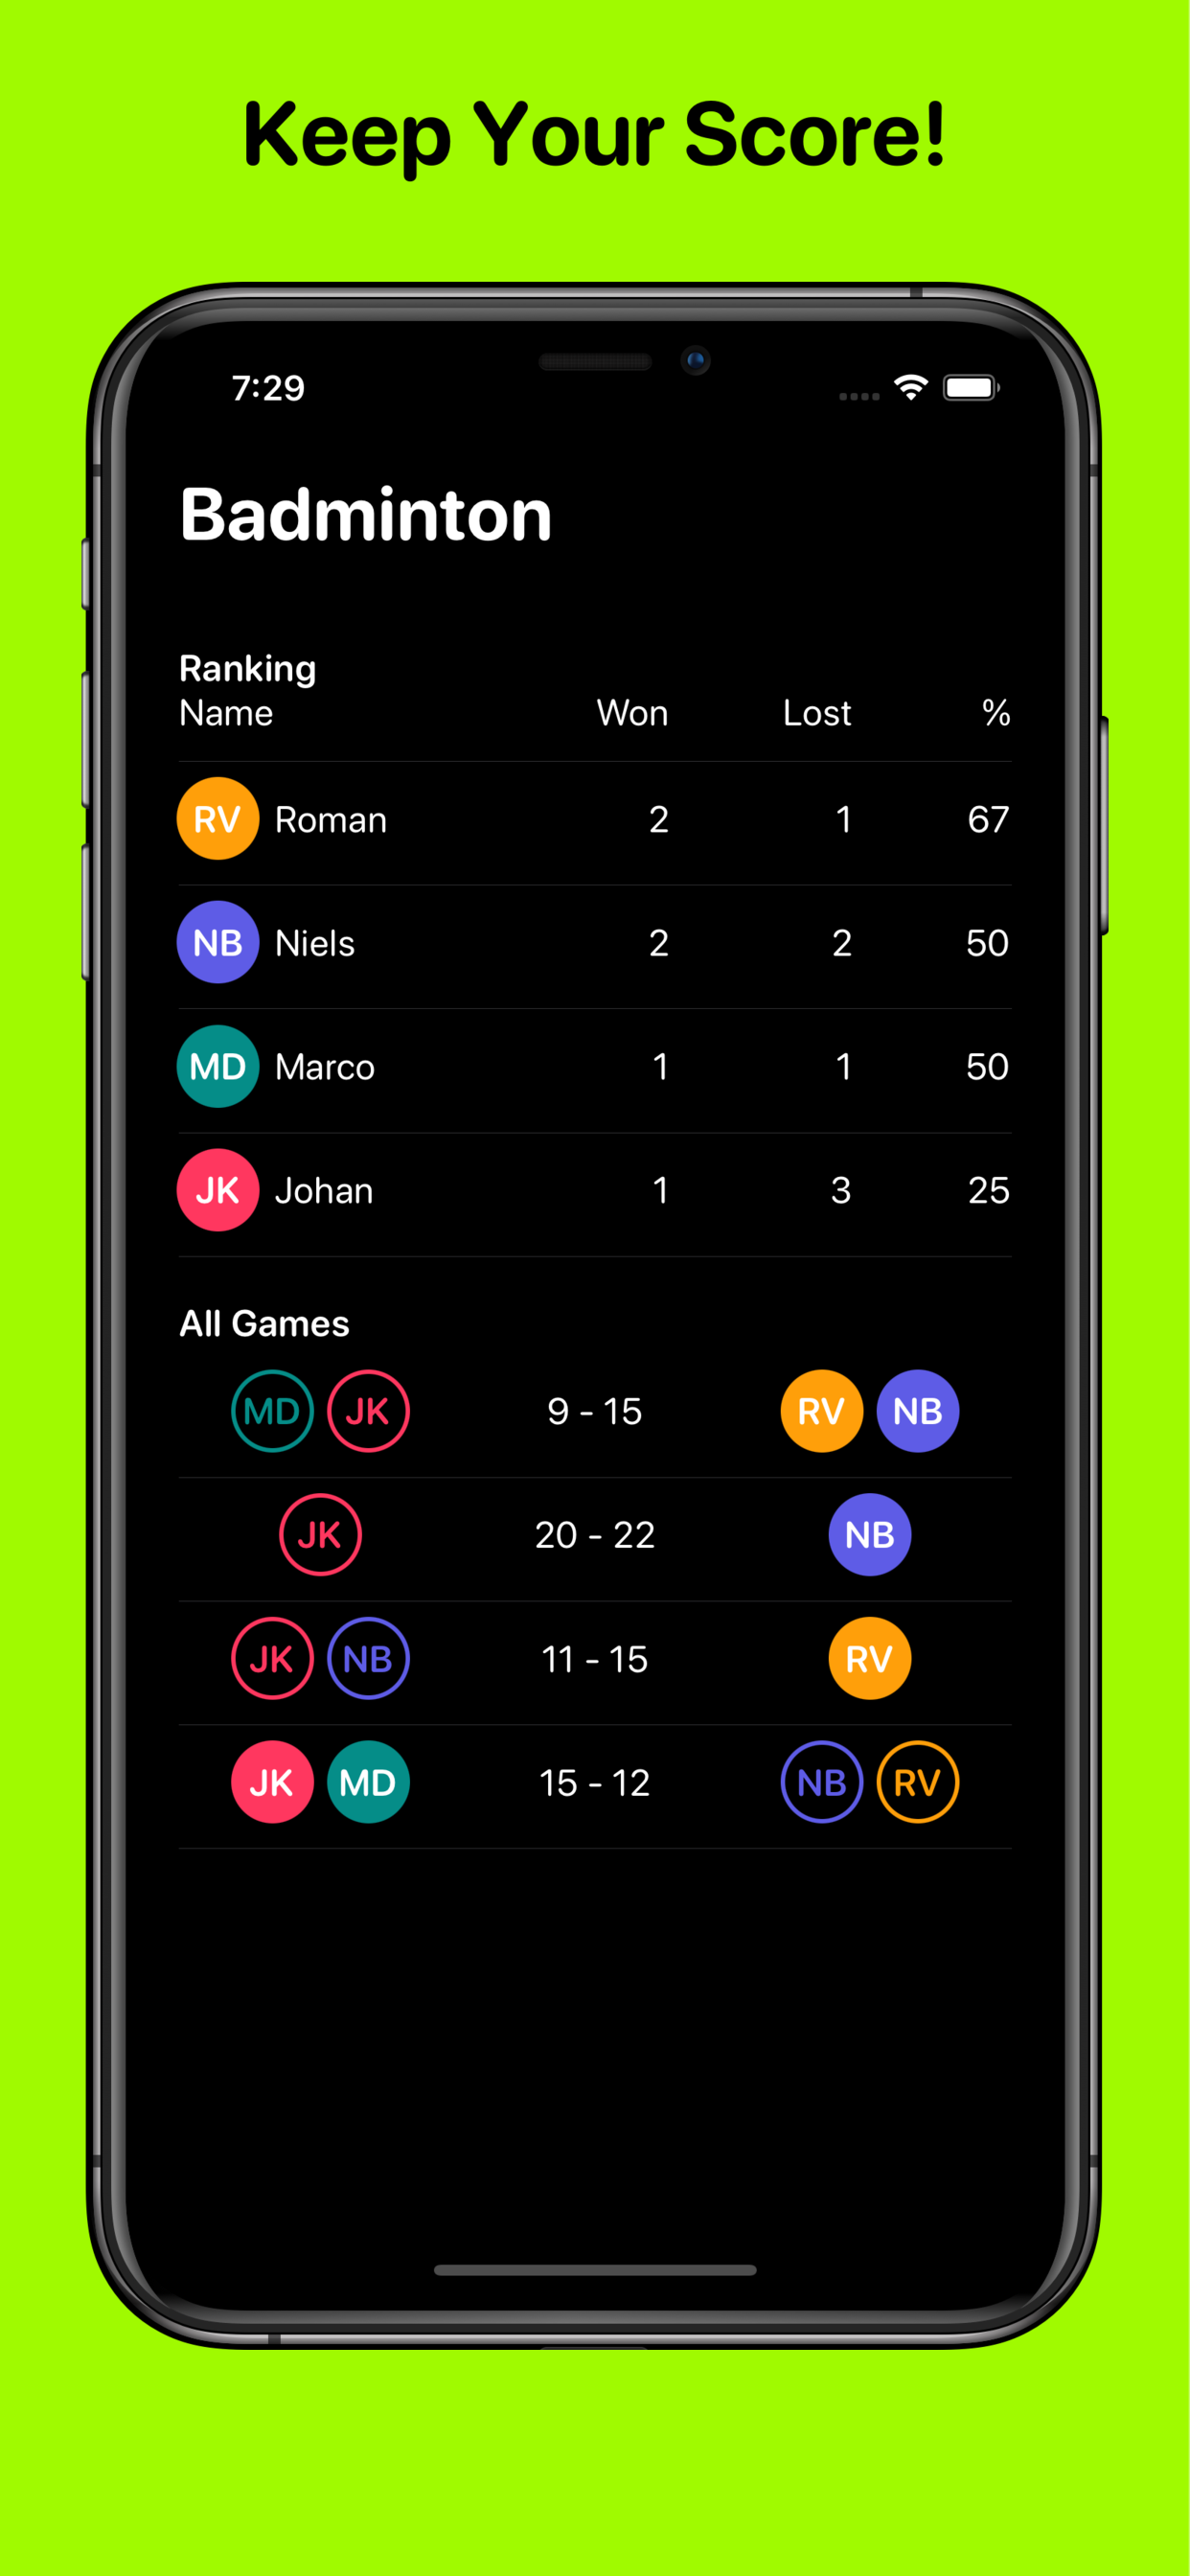 Badminton app's main screen